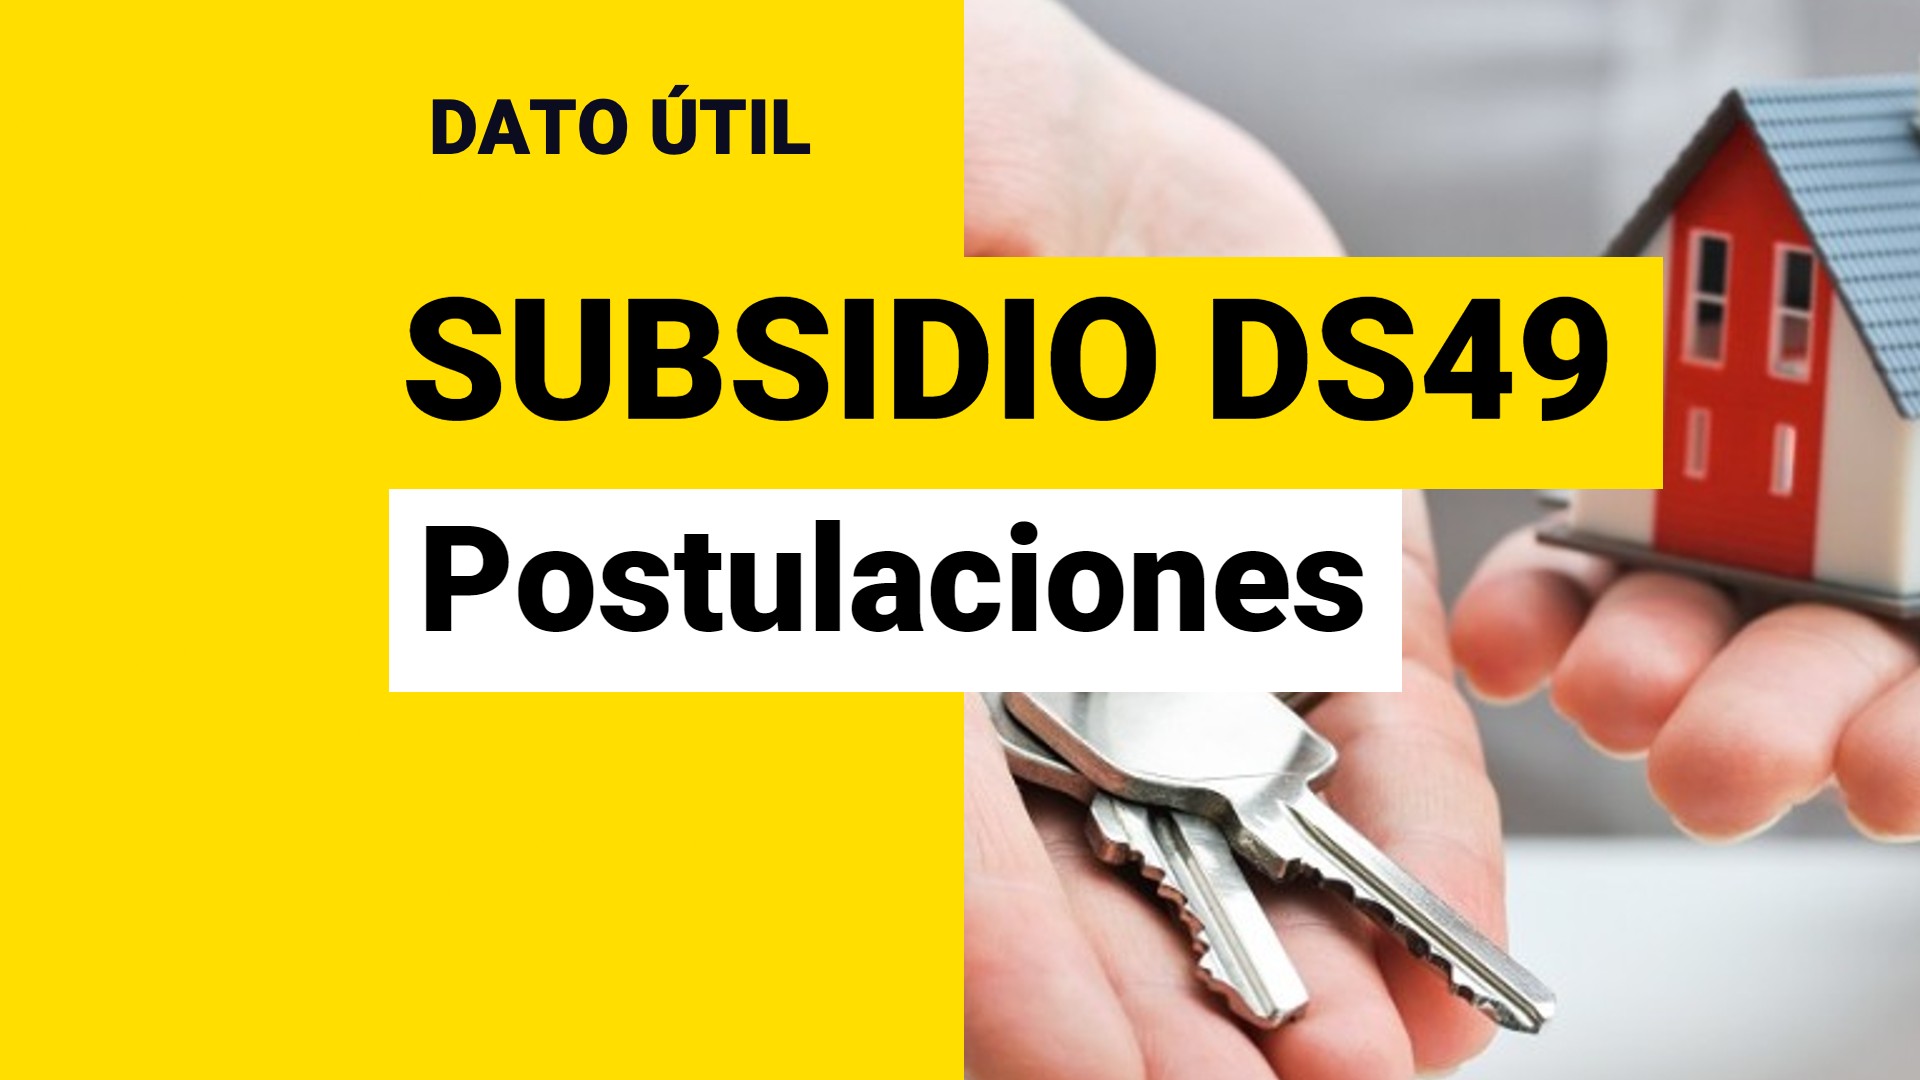 Subsidio DS49: ¿Cómo puedo postular a la casa propia sin crédito hipotecario?